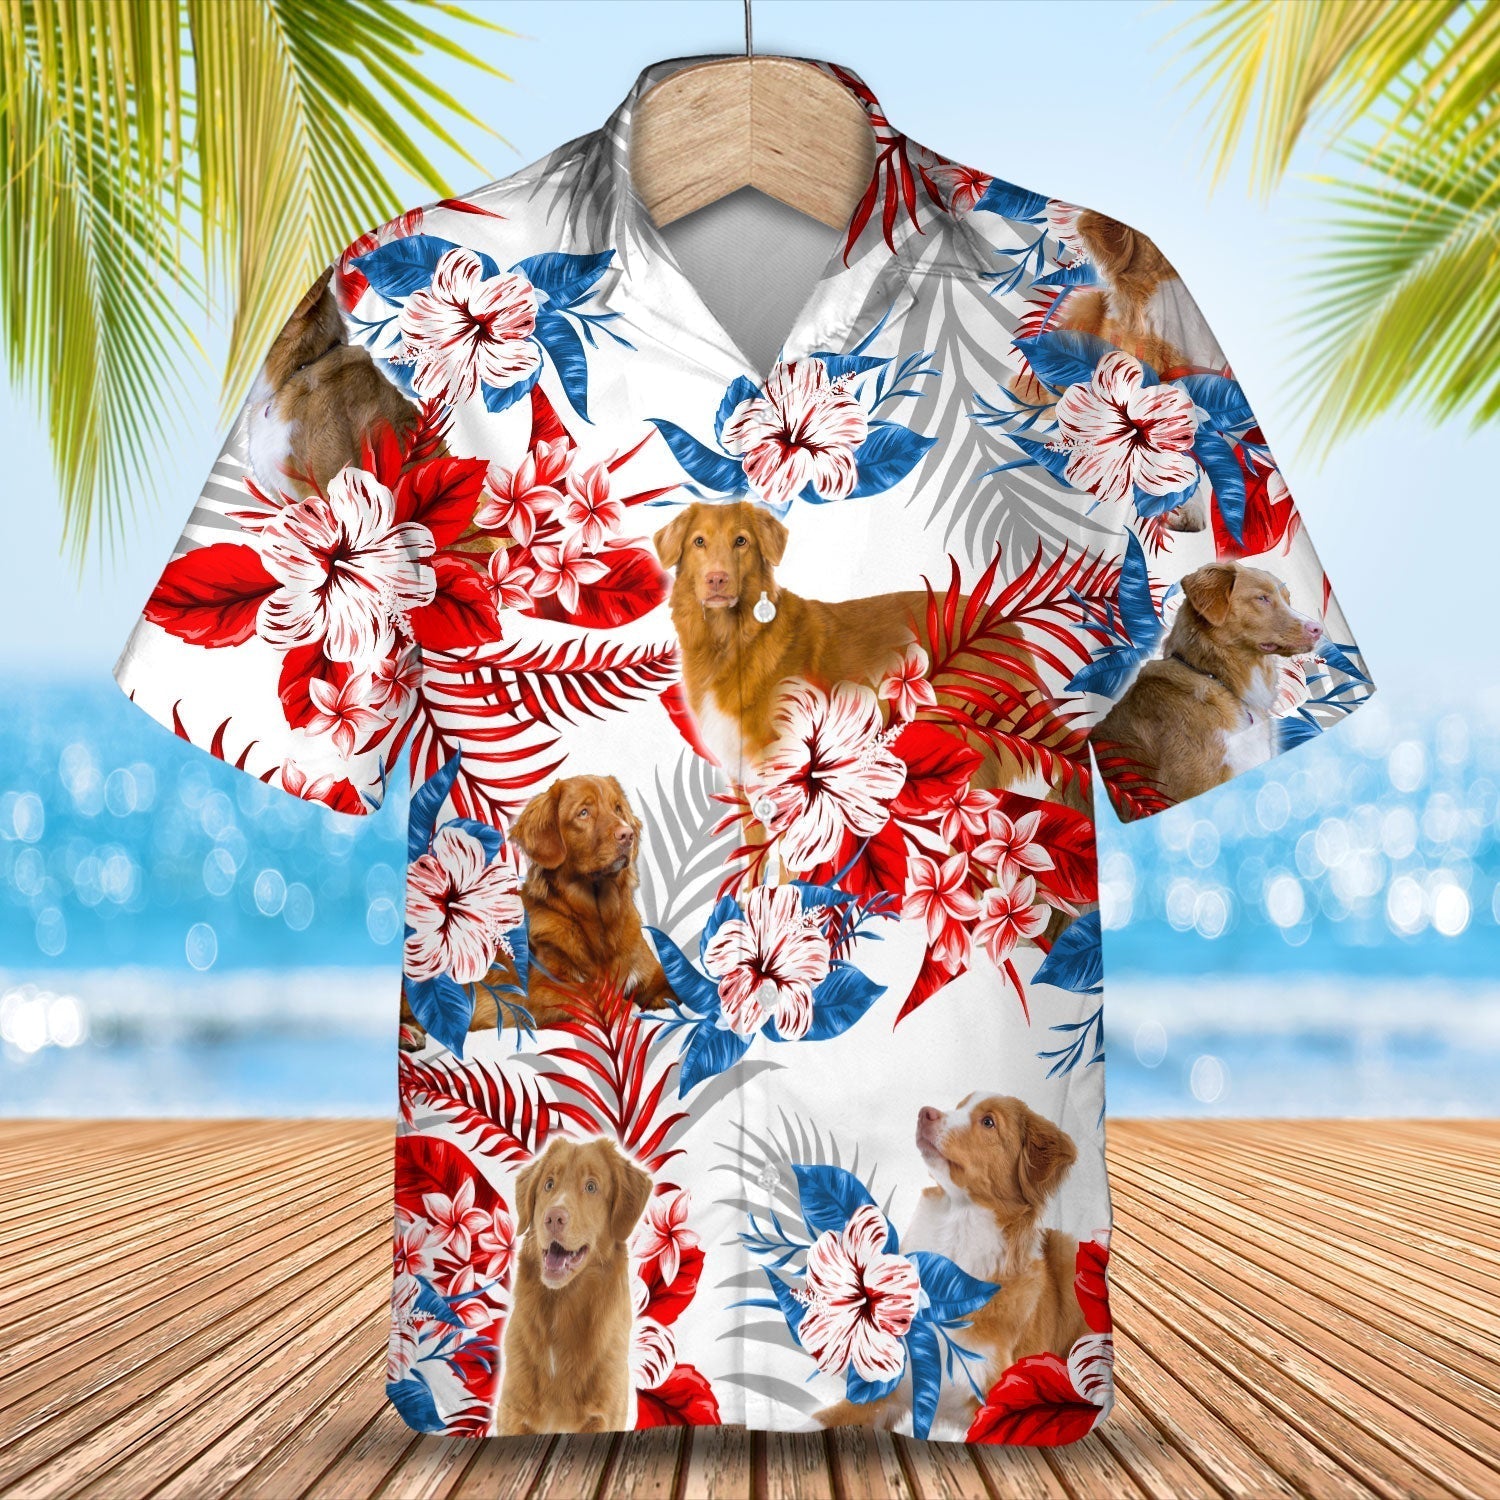 Nova Scotia Duck Tolling Retriever Hawaiian Shirt - Summer aloha shirt/ Hawaiian shirt for Men and women